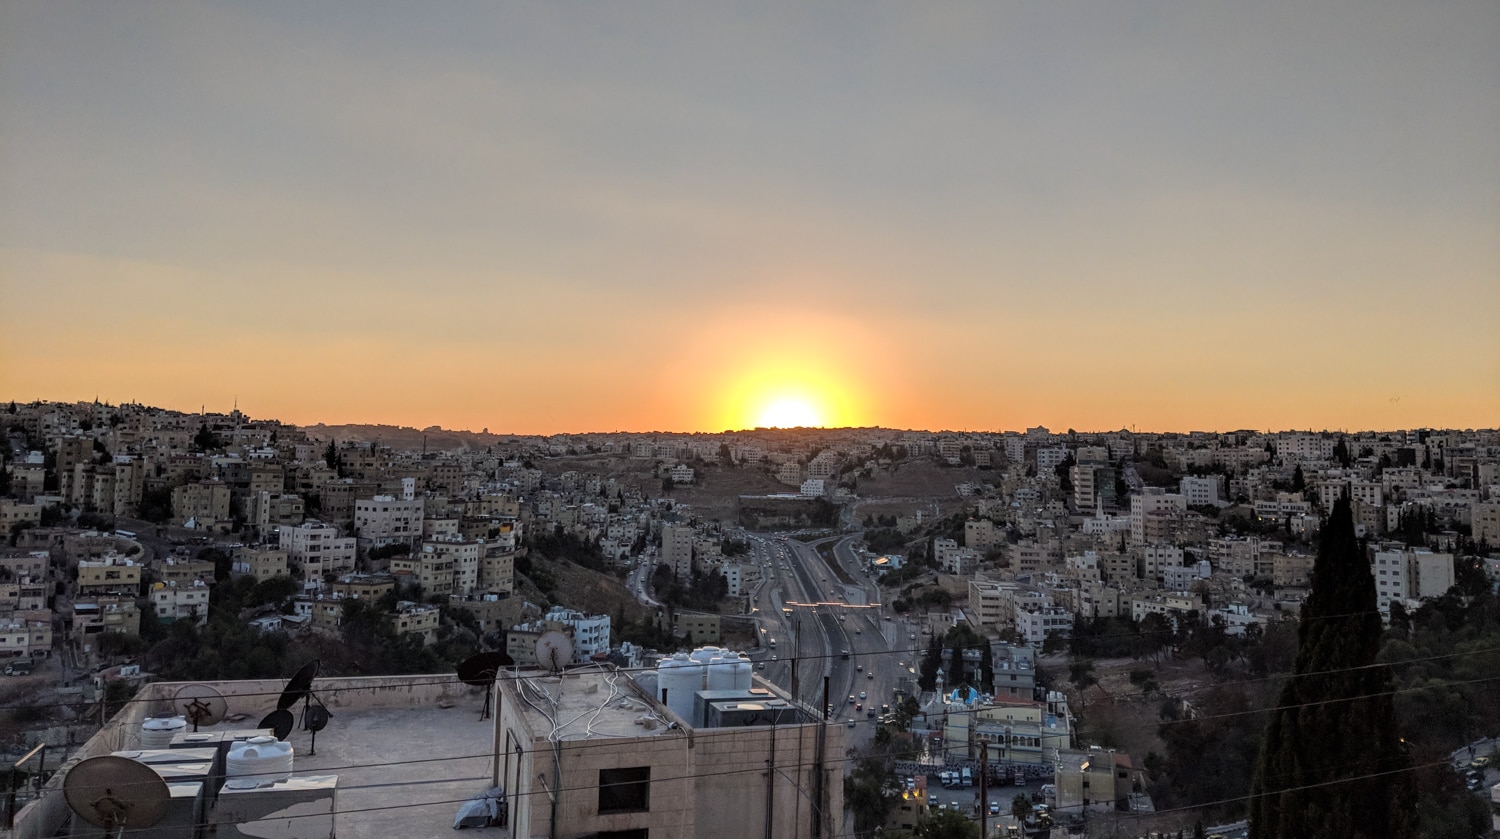 Sunset over Amman